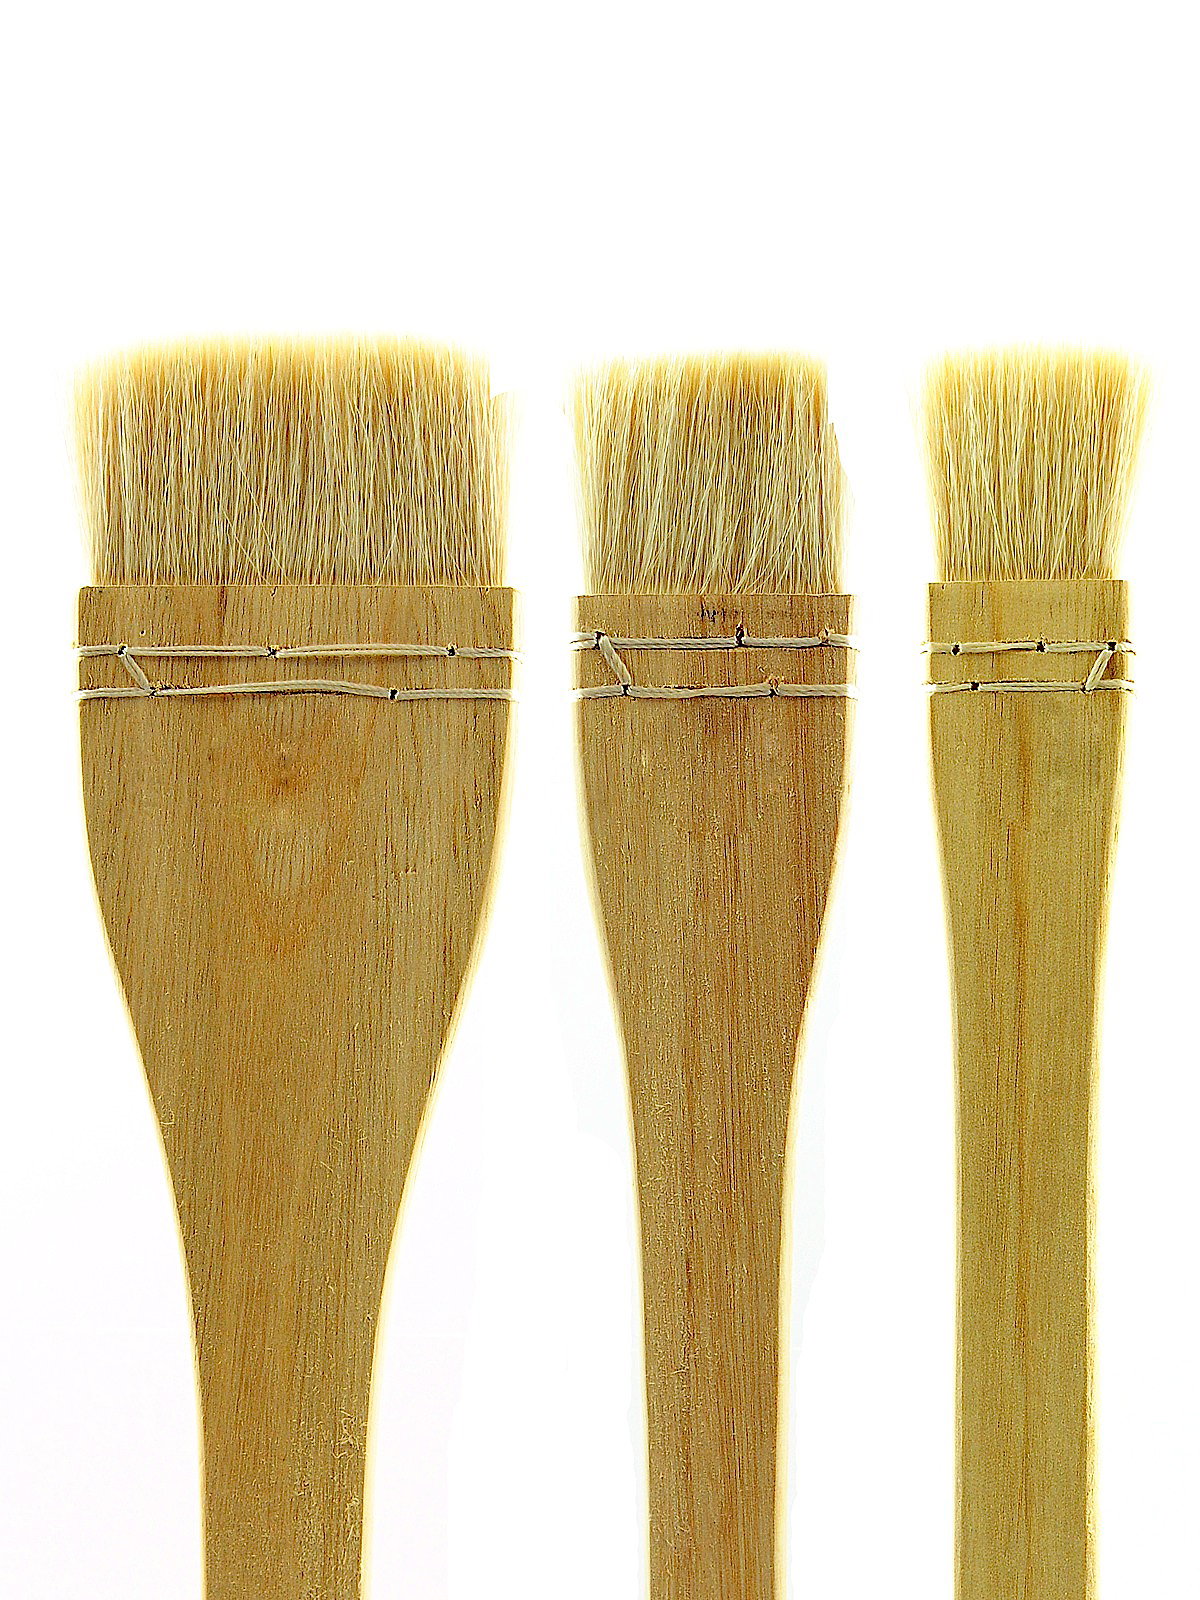 Yasutomo Hake Flat Wash Brush 2-1/2in